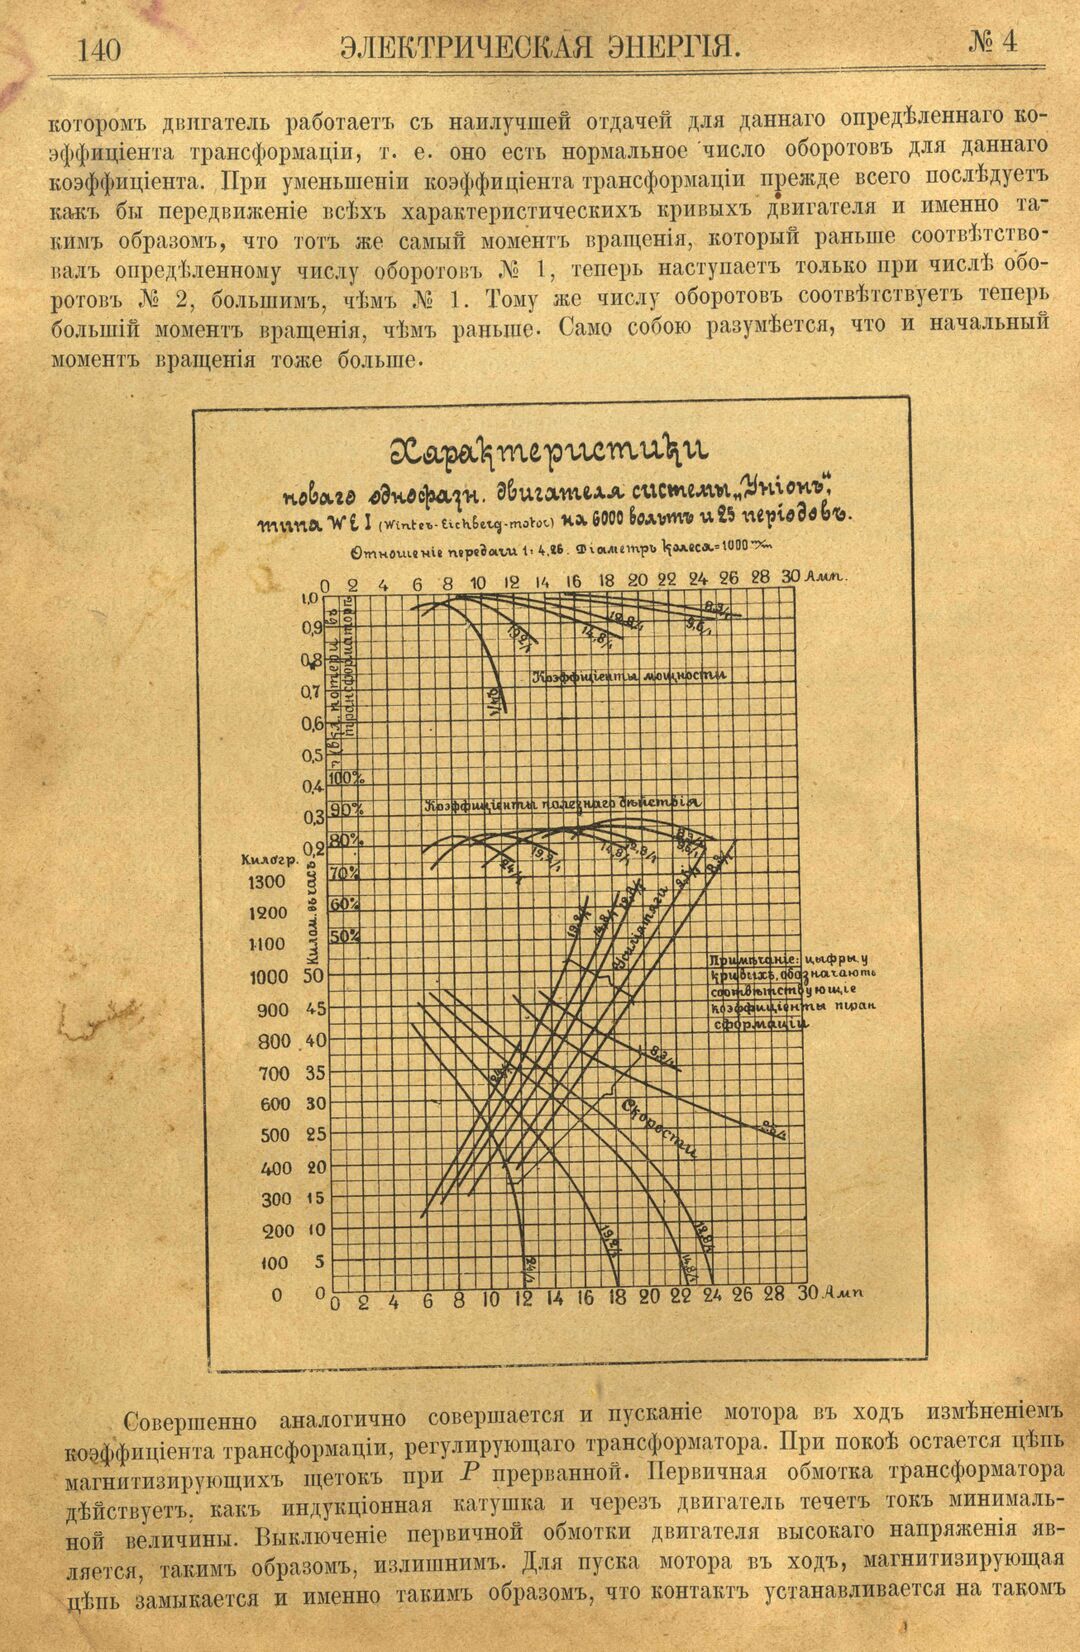 Рис. 1. Журнал Электрическая Энергiя, 4 номер, апрель, 1904 года, страница 140